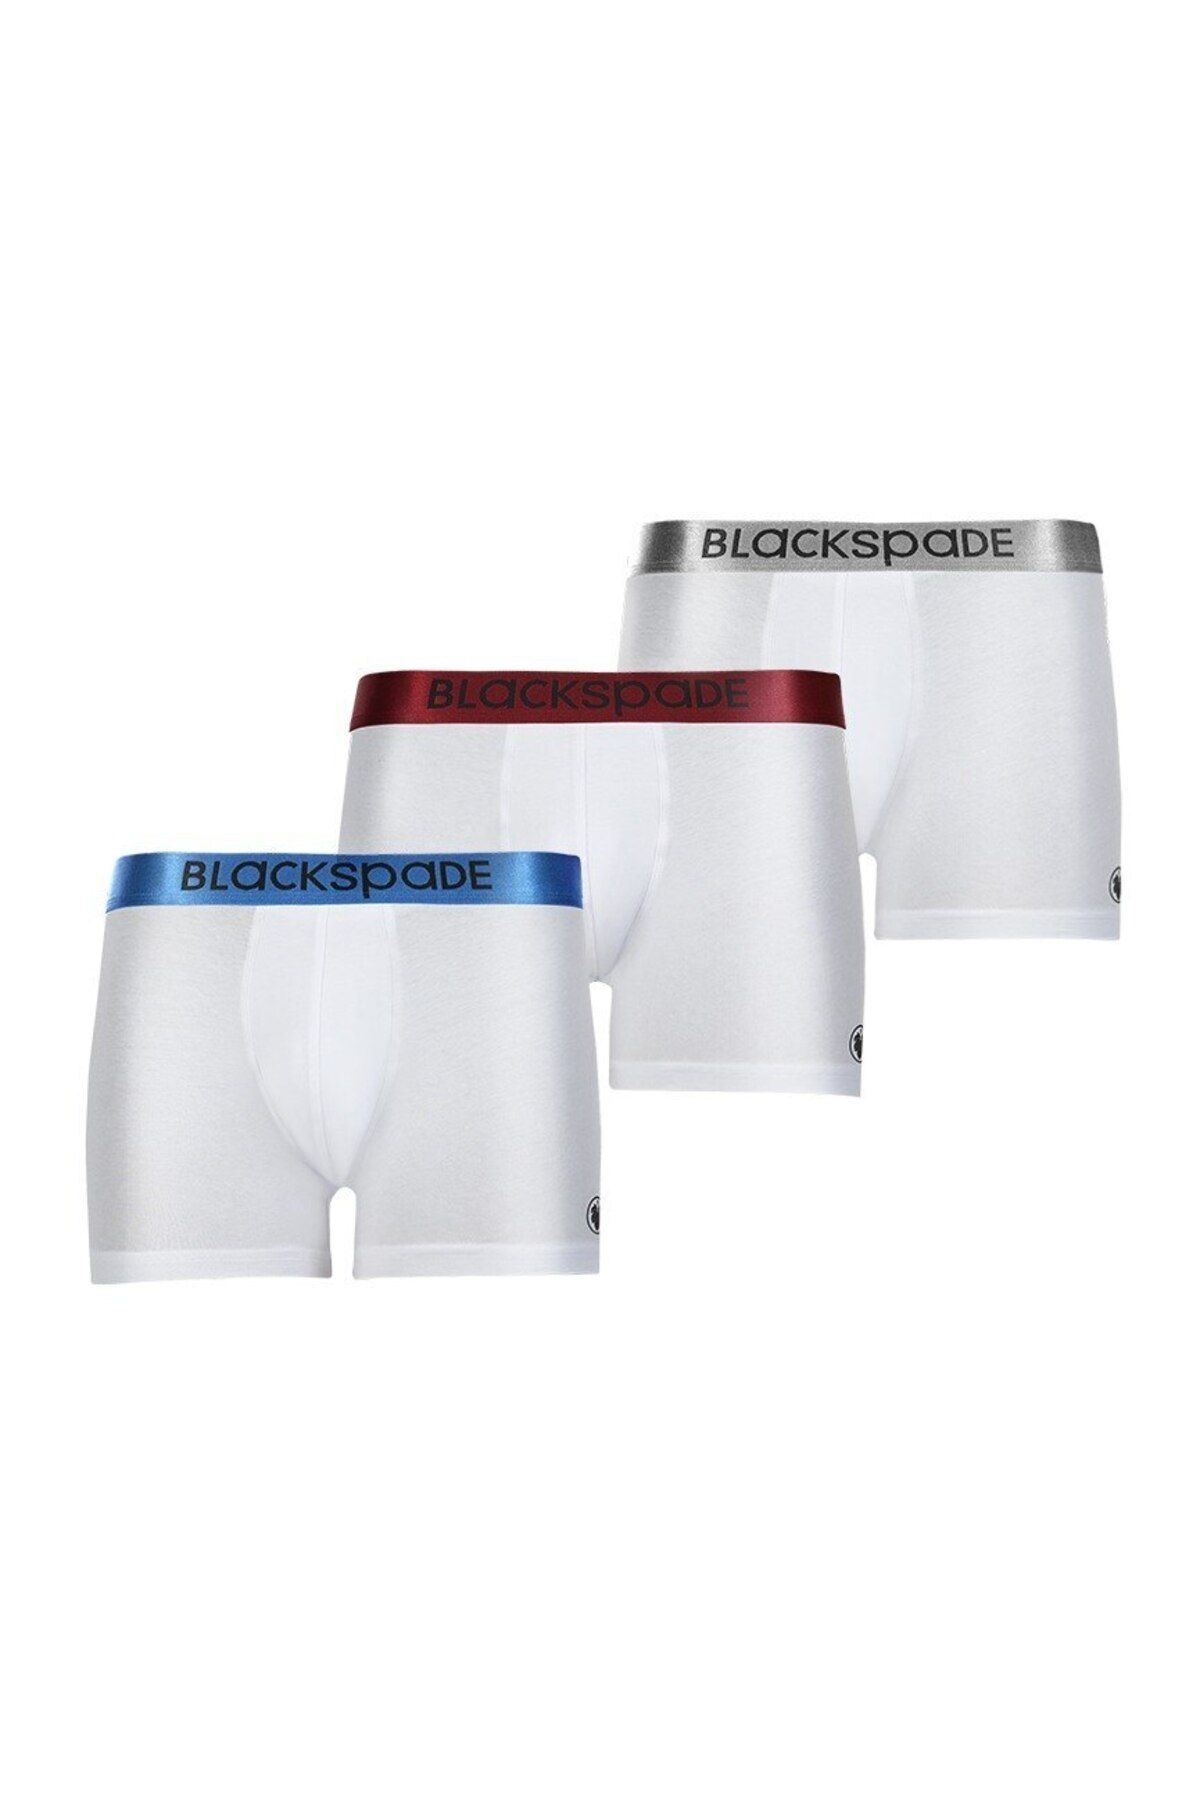 Blackspade Erkek Boxer 3lü Paket Modern Basics 9471 - Beyaz Beyaz Beyaz